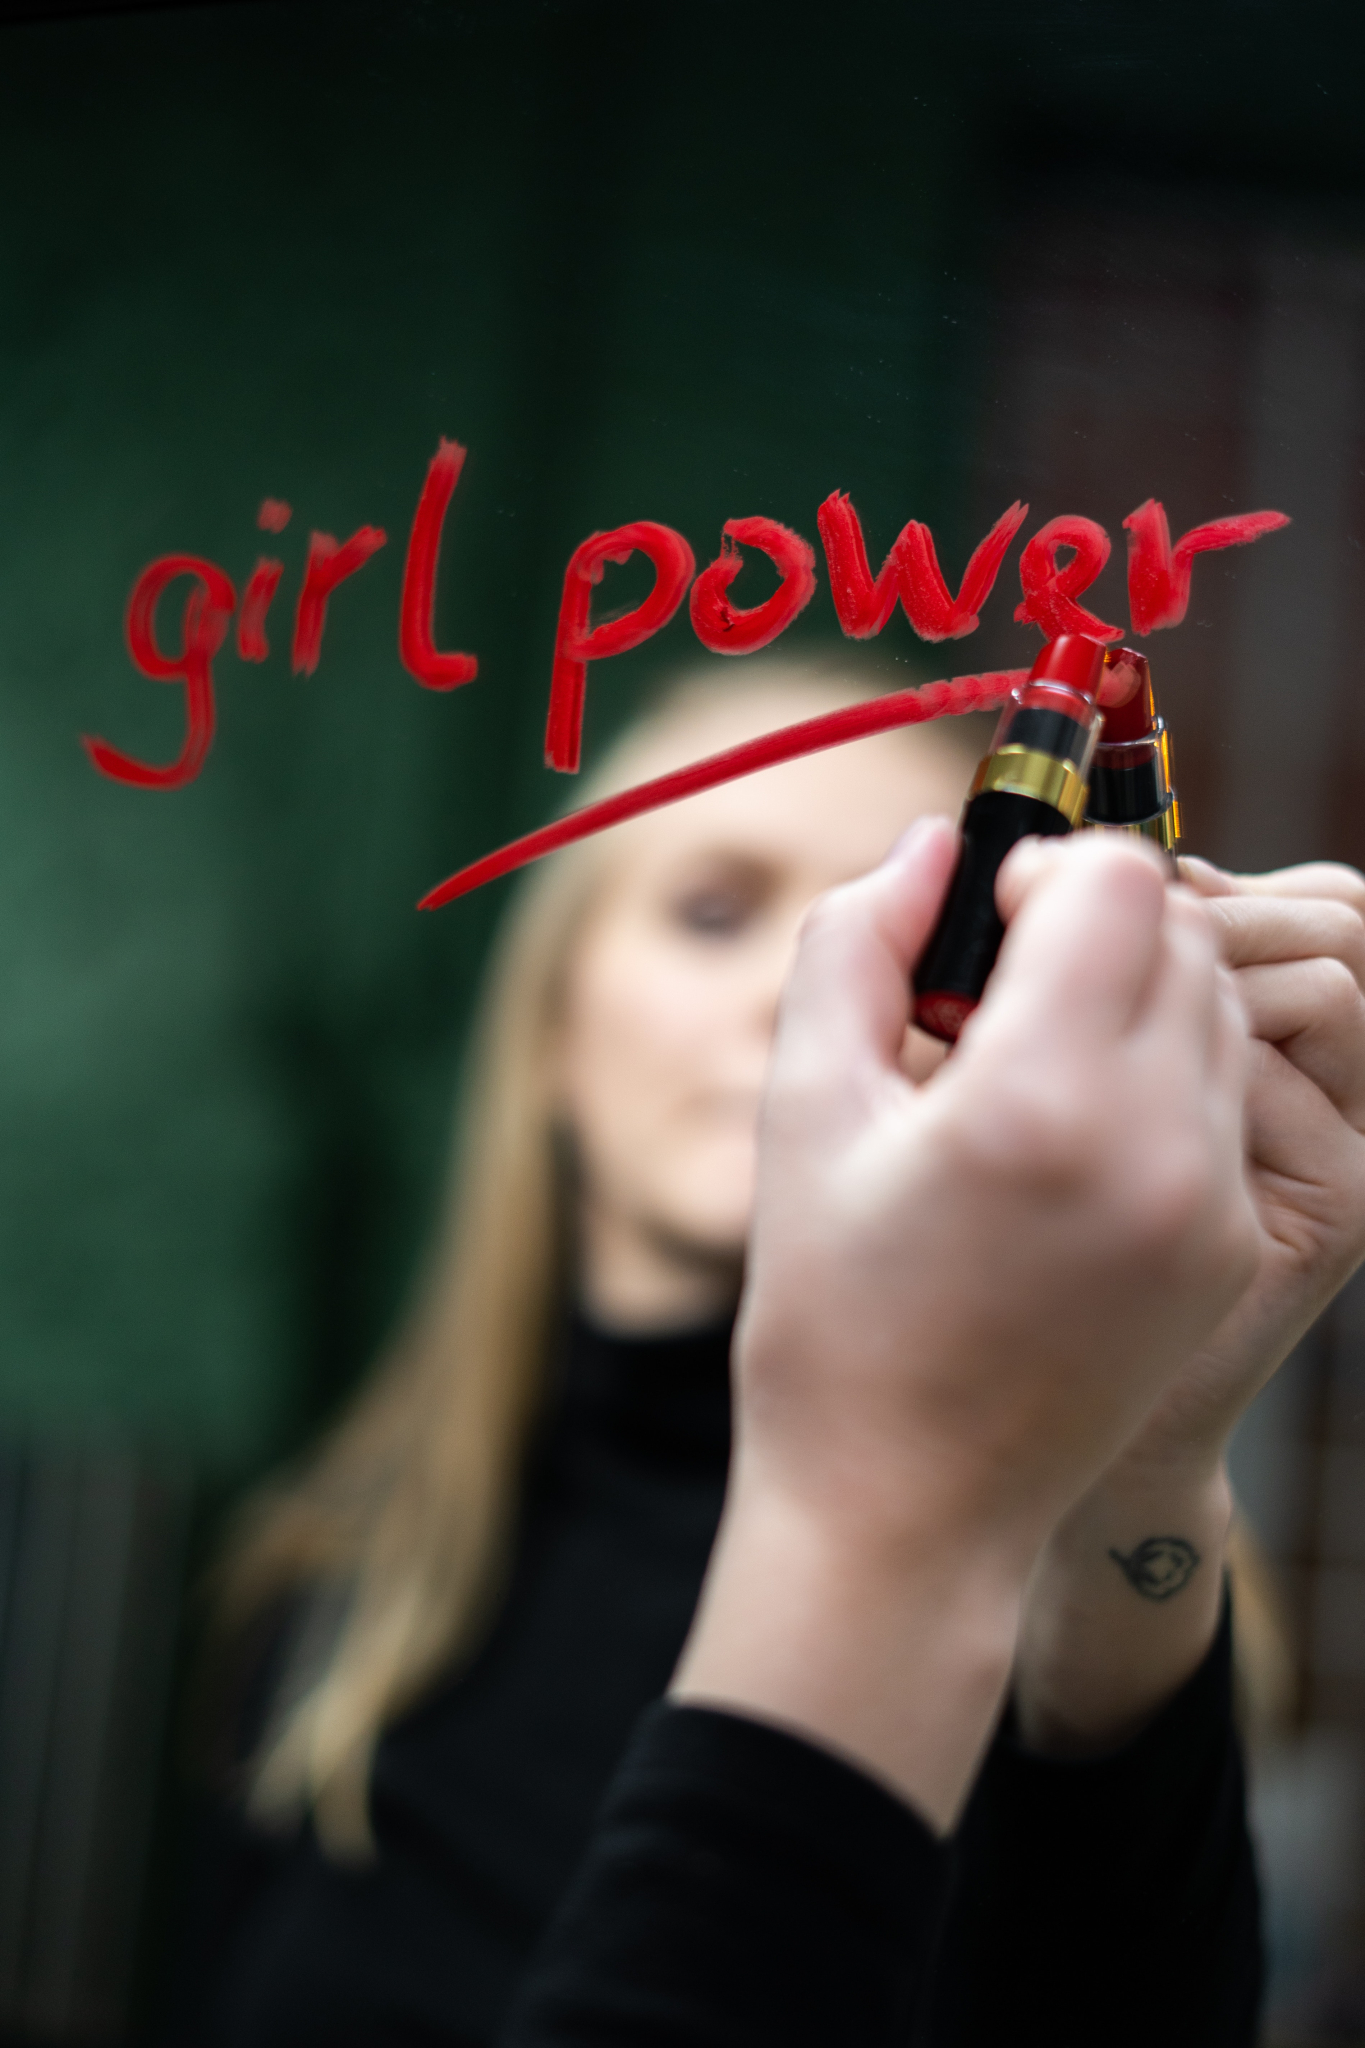 Mujer delante de un espejo que ha escrito su lema, "Girl power"